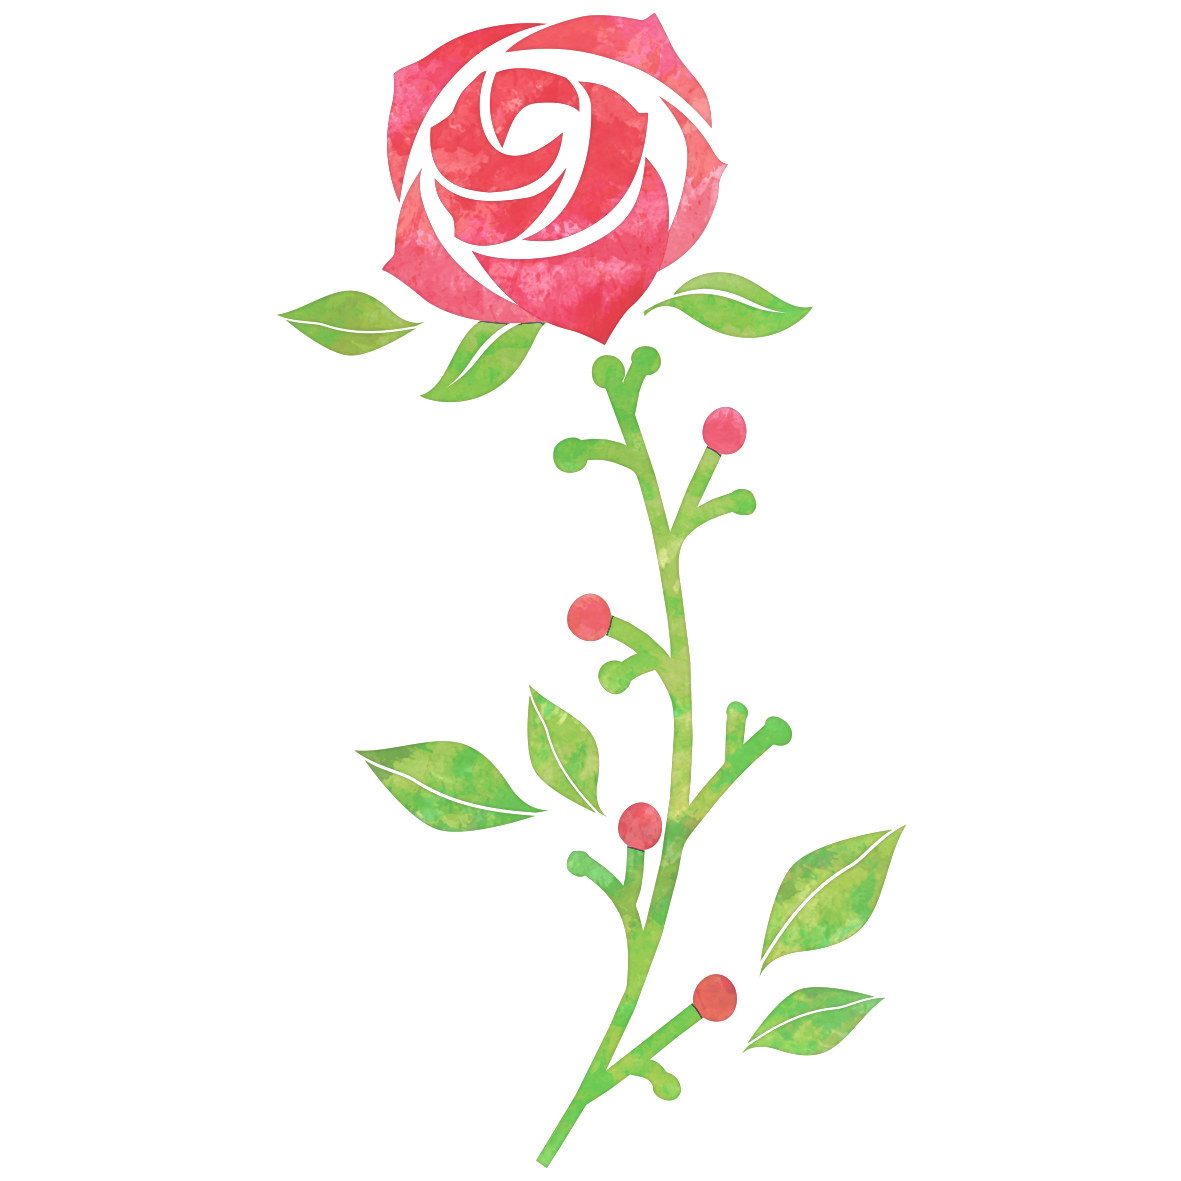 6月2日は「ローズの日」なんですって！知ってましたか？6=ろ、2=ず、語呂あわせでローズ☺︎大切な人へ、バラの贈り物で感謝を伝えるなんて素敵な記念日ですね♡#伝えたい #いつも #ありがとう